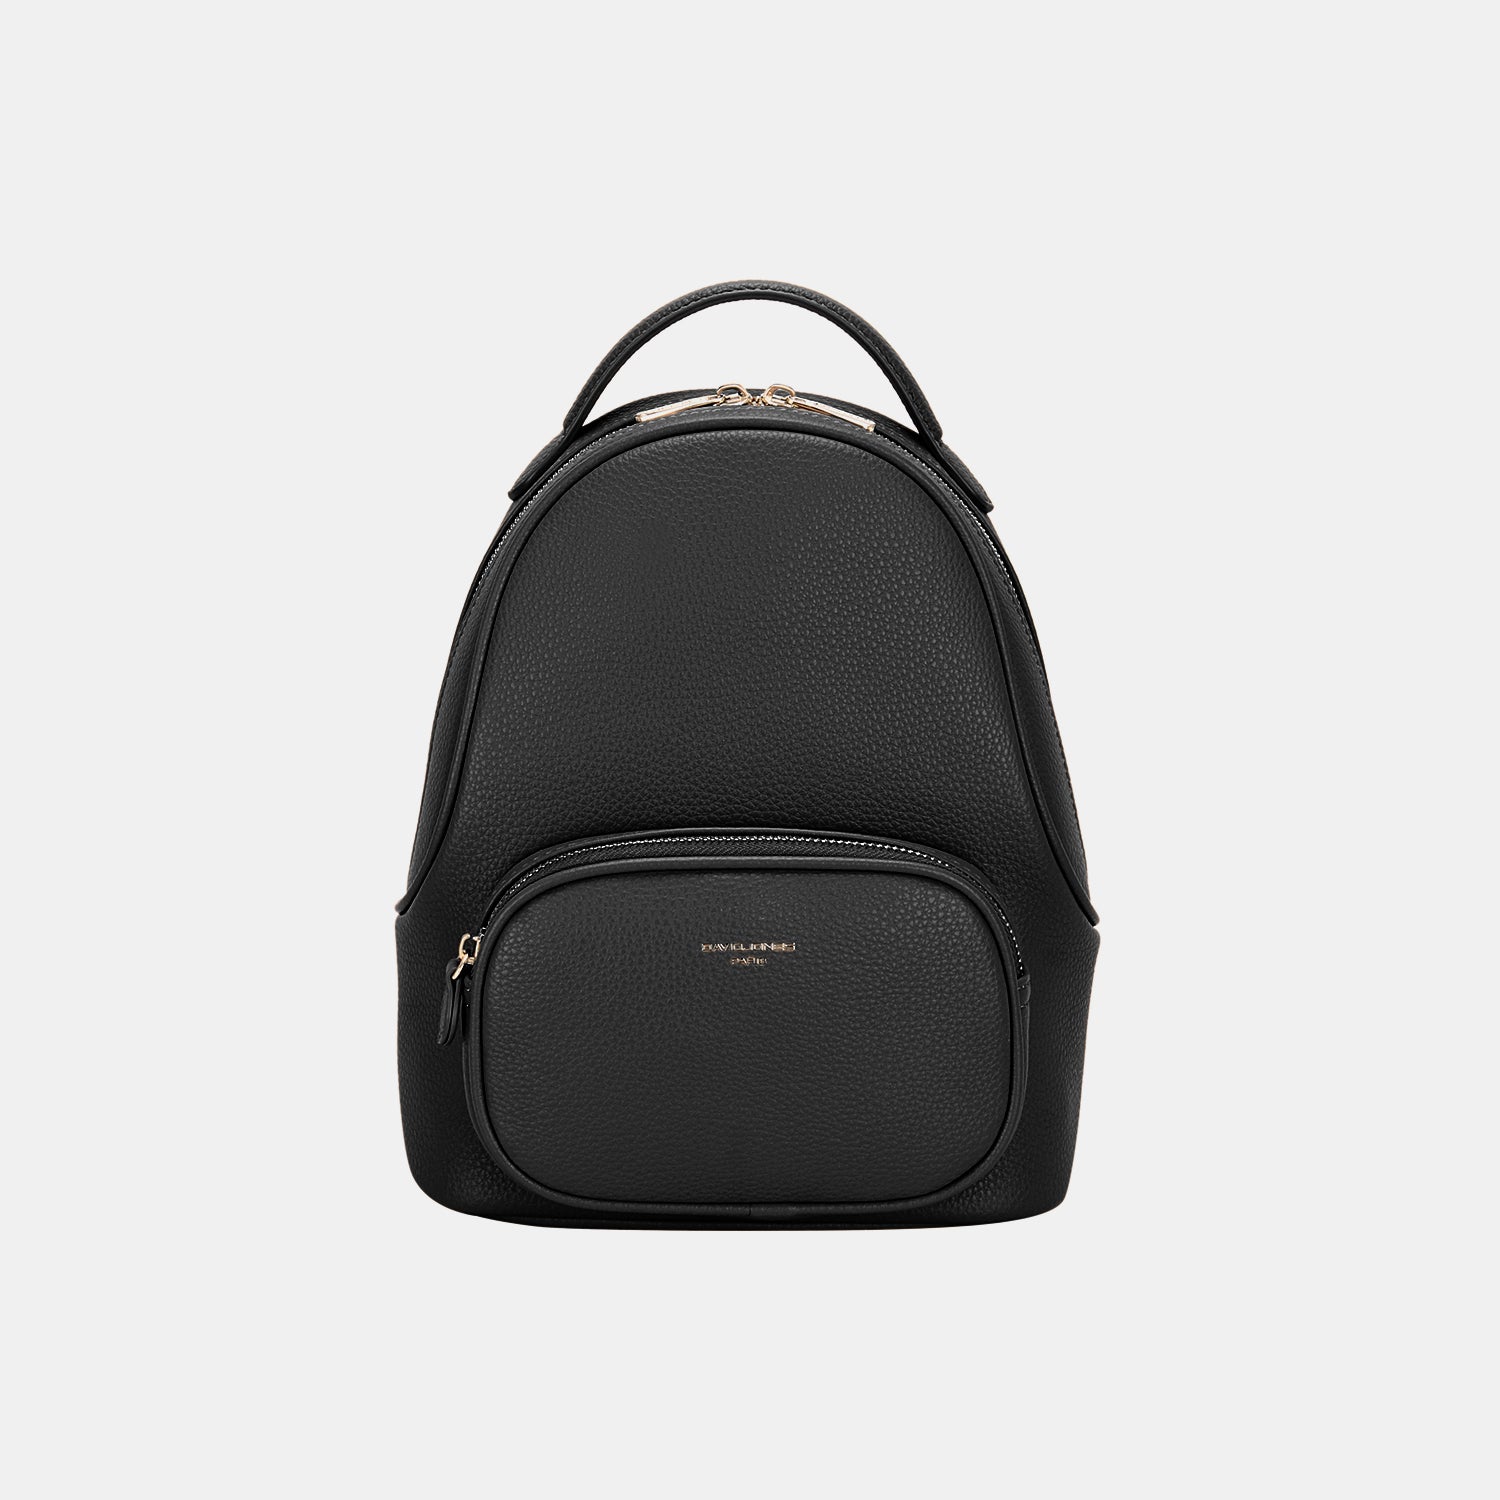 TEEK - Arched Handle Backpack BAG TEEK Trend Black  